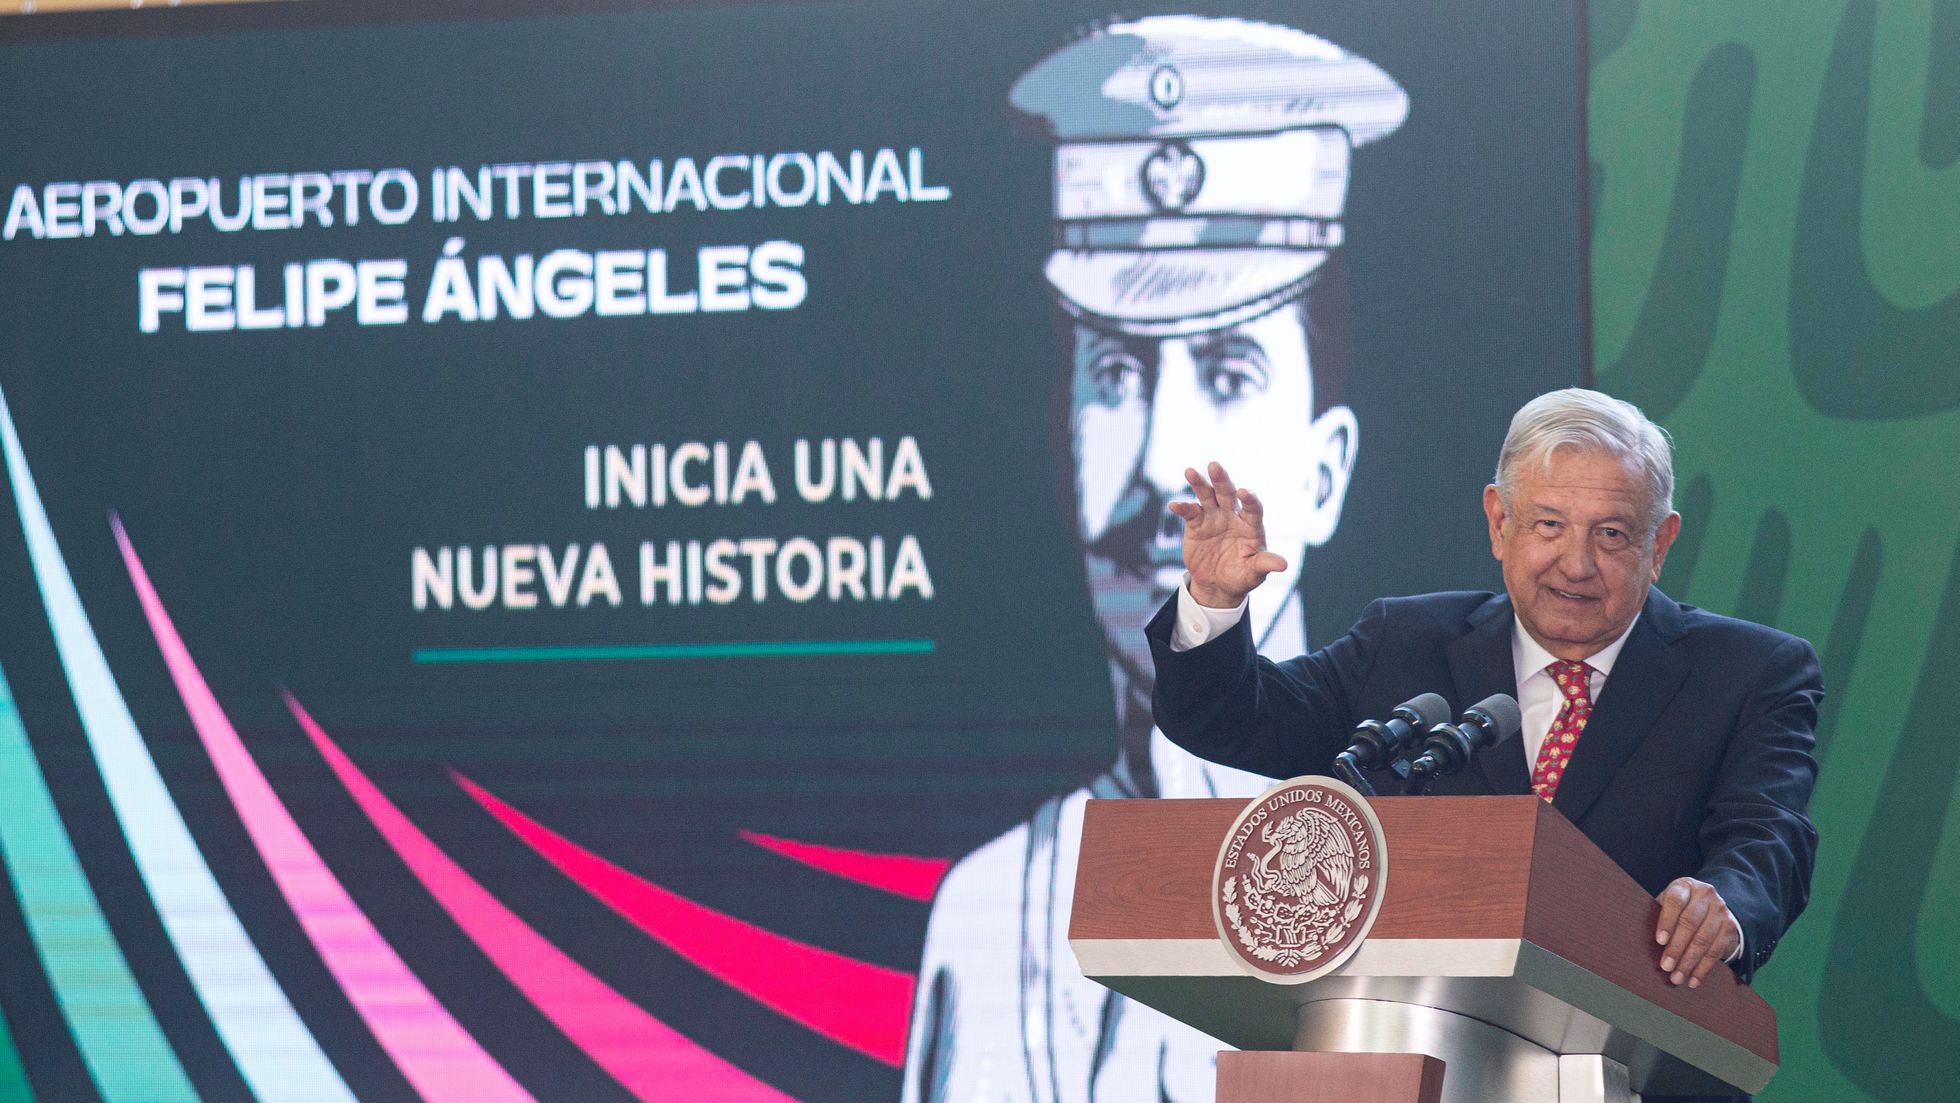 López Obrador inauguró el nuevo aeropuerto en compañía más de mil invitados promotores de la Cuarta Transofrmación